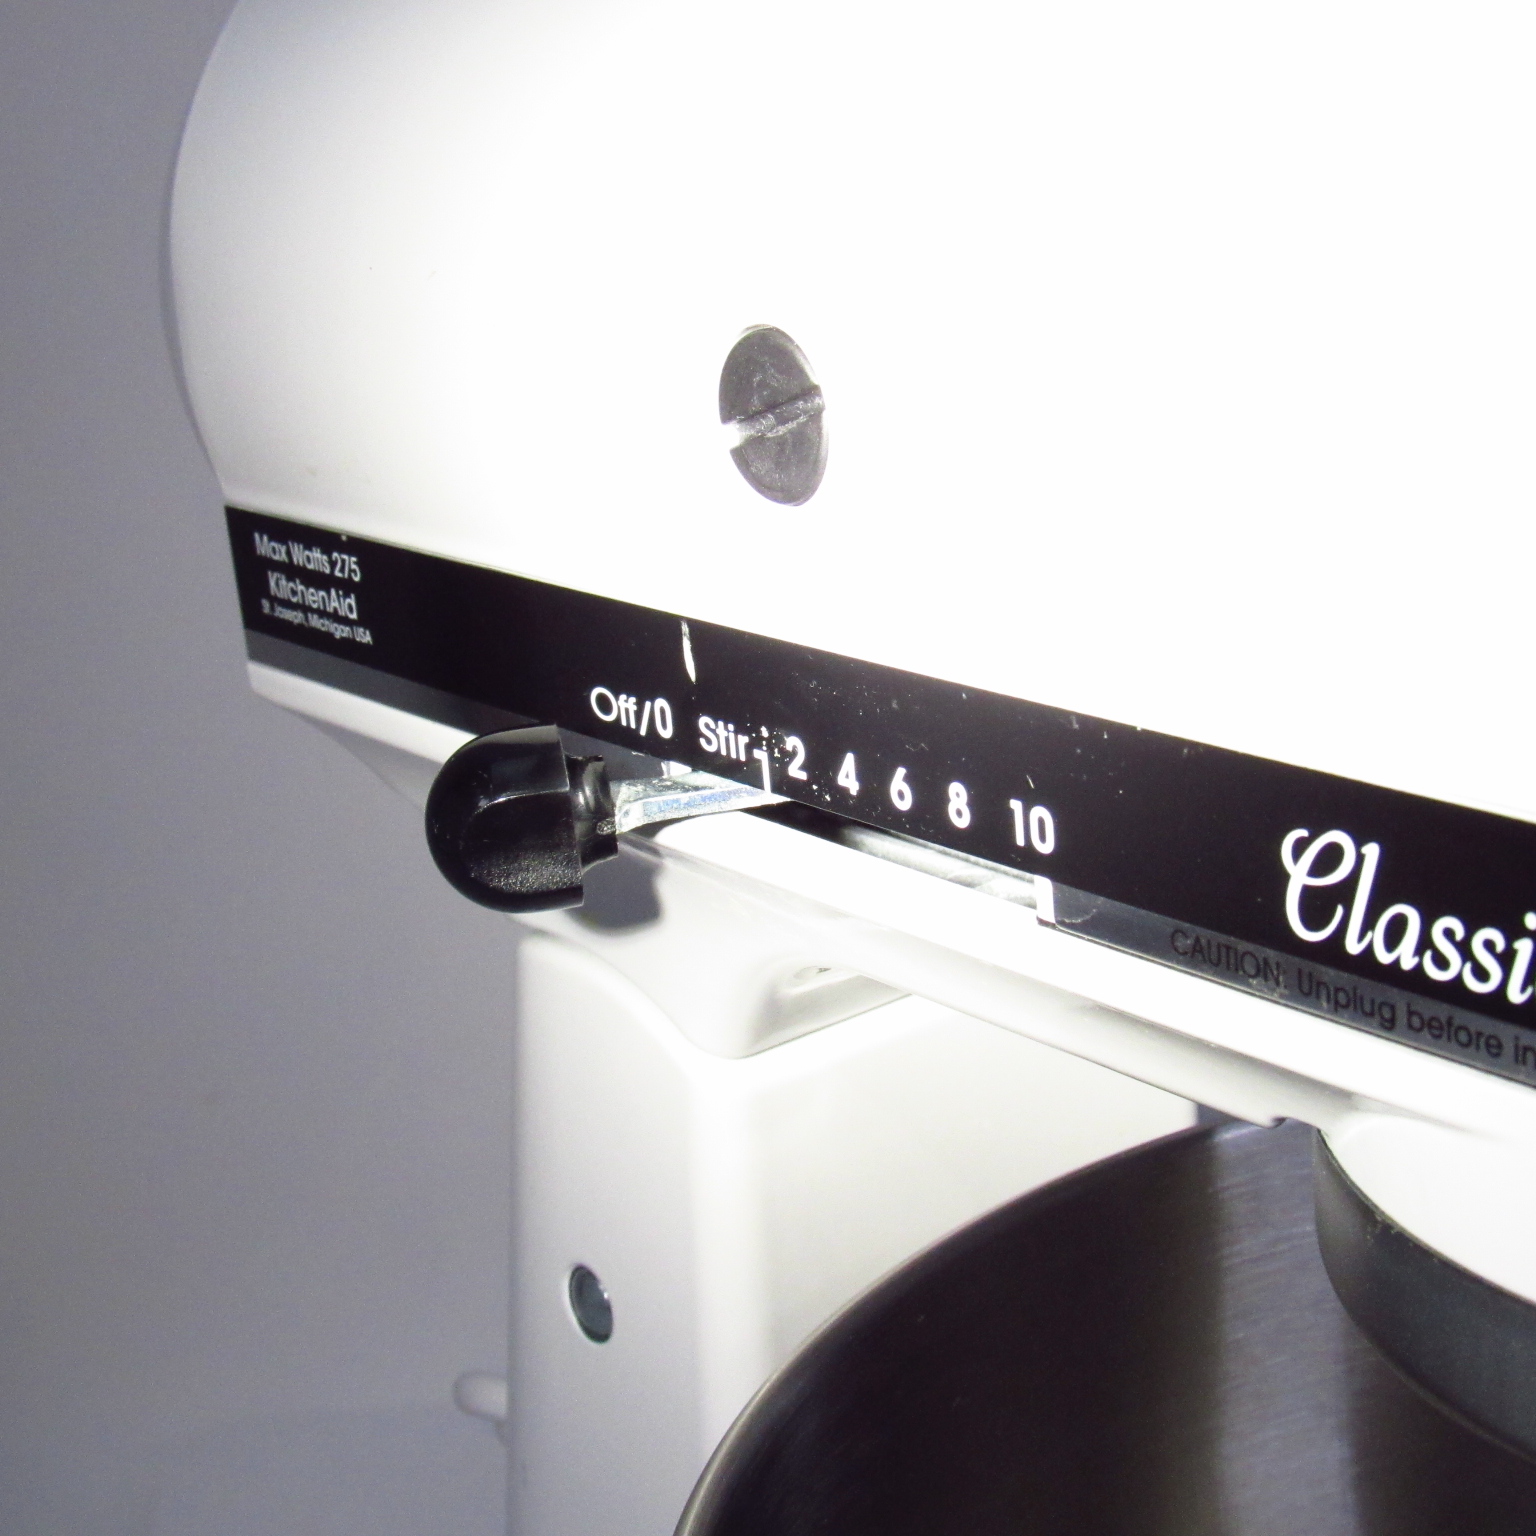 KitchenAid Classic Plus KSM75WH 4.5-Quart Tilt-Head Stand Mixer - White